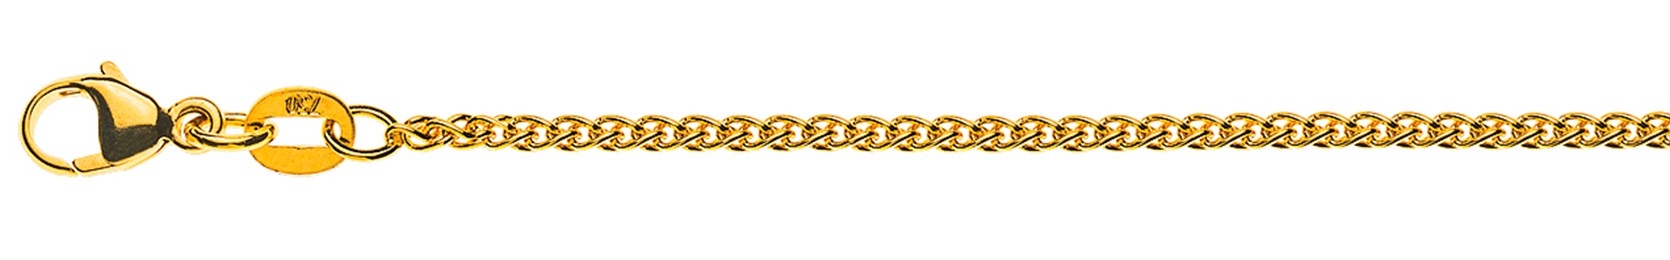 AURONOS Élégance Necklace yellow gold 14K cable chain 42cm 1.6mm